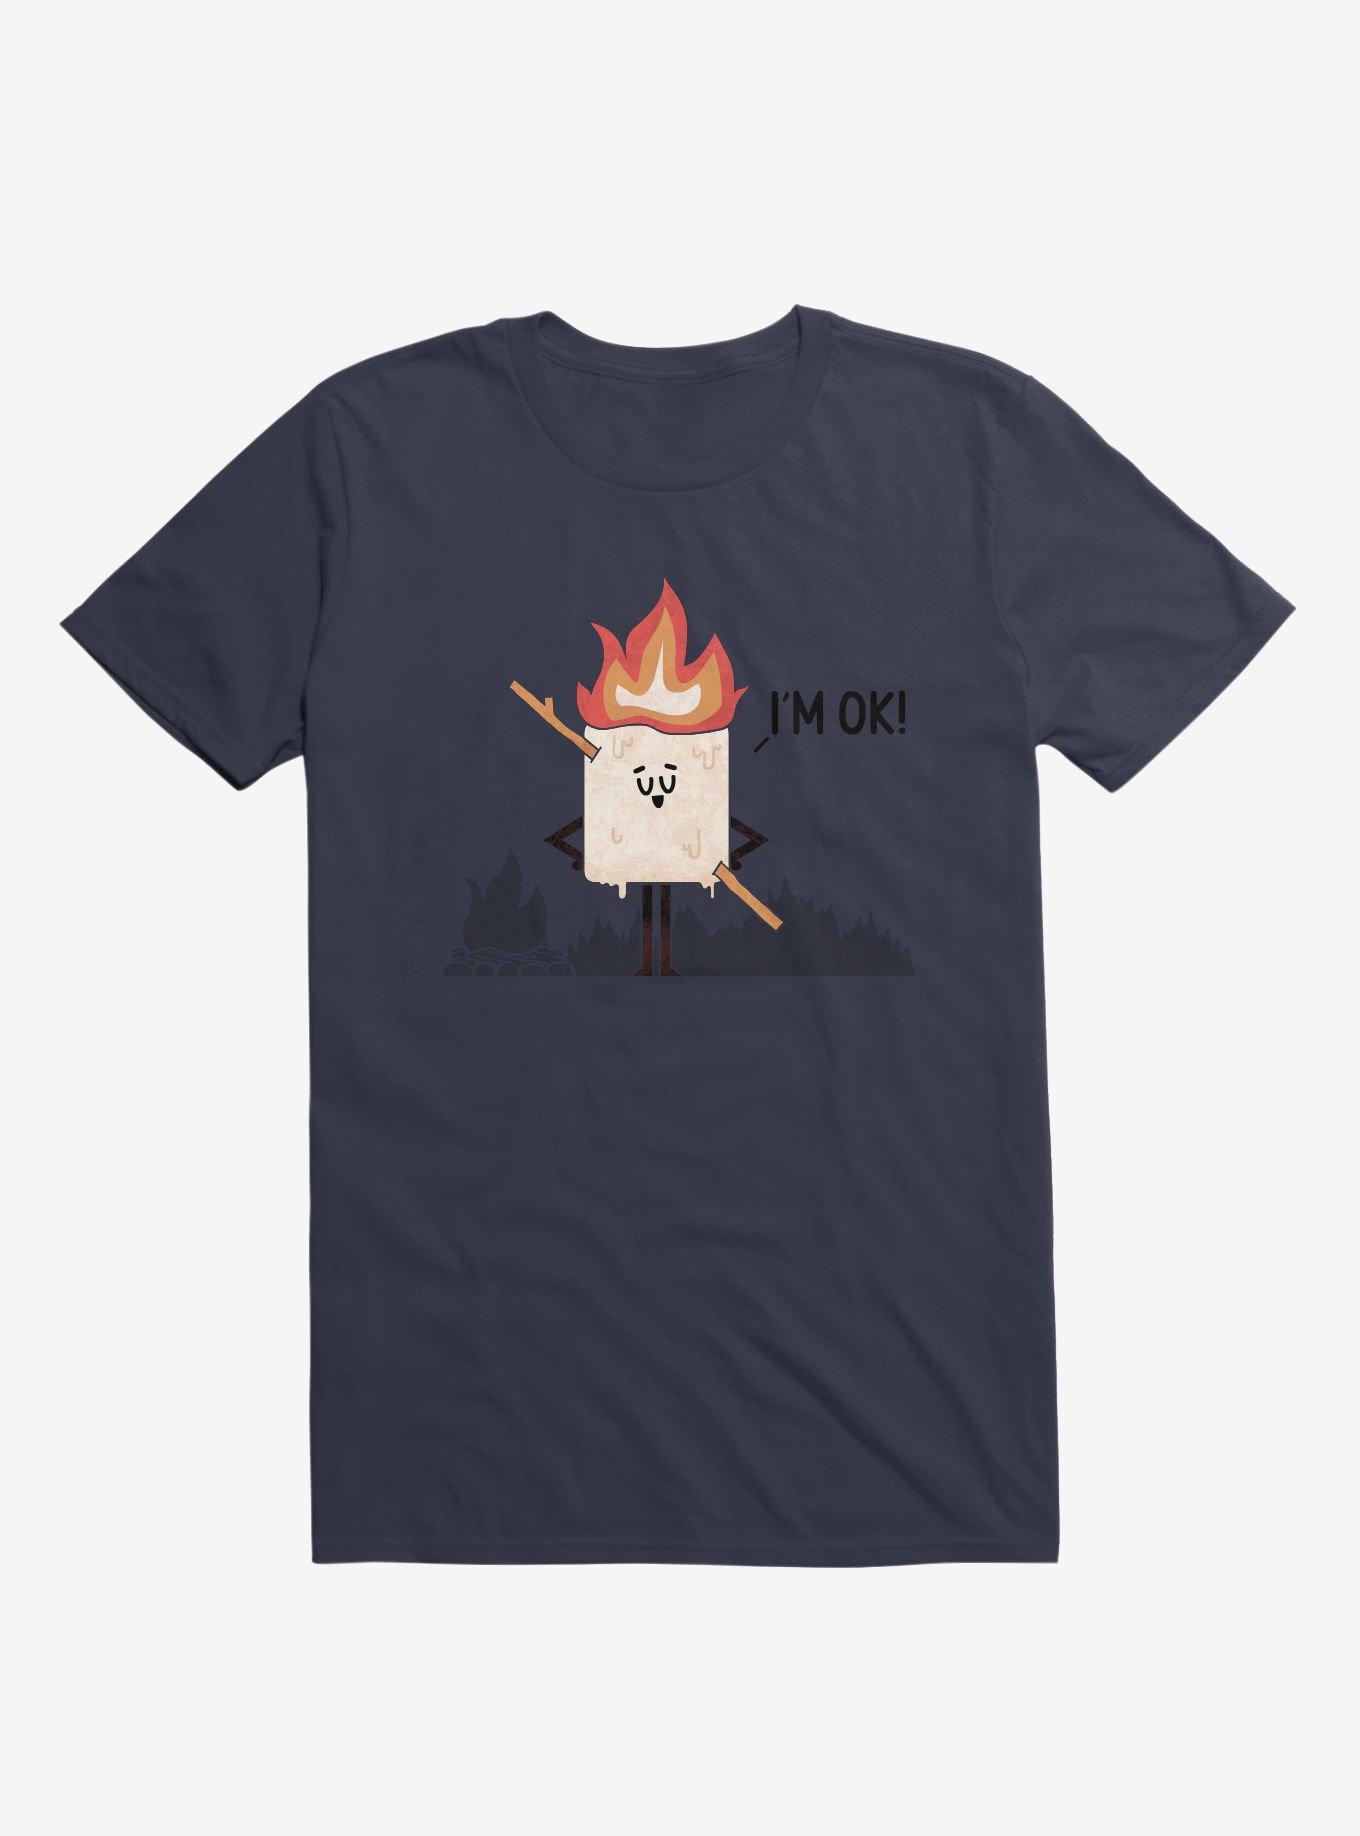 I'm OK! Campfire S'more Navy Blue T-Shirt